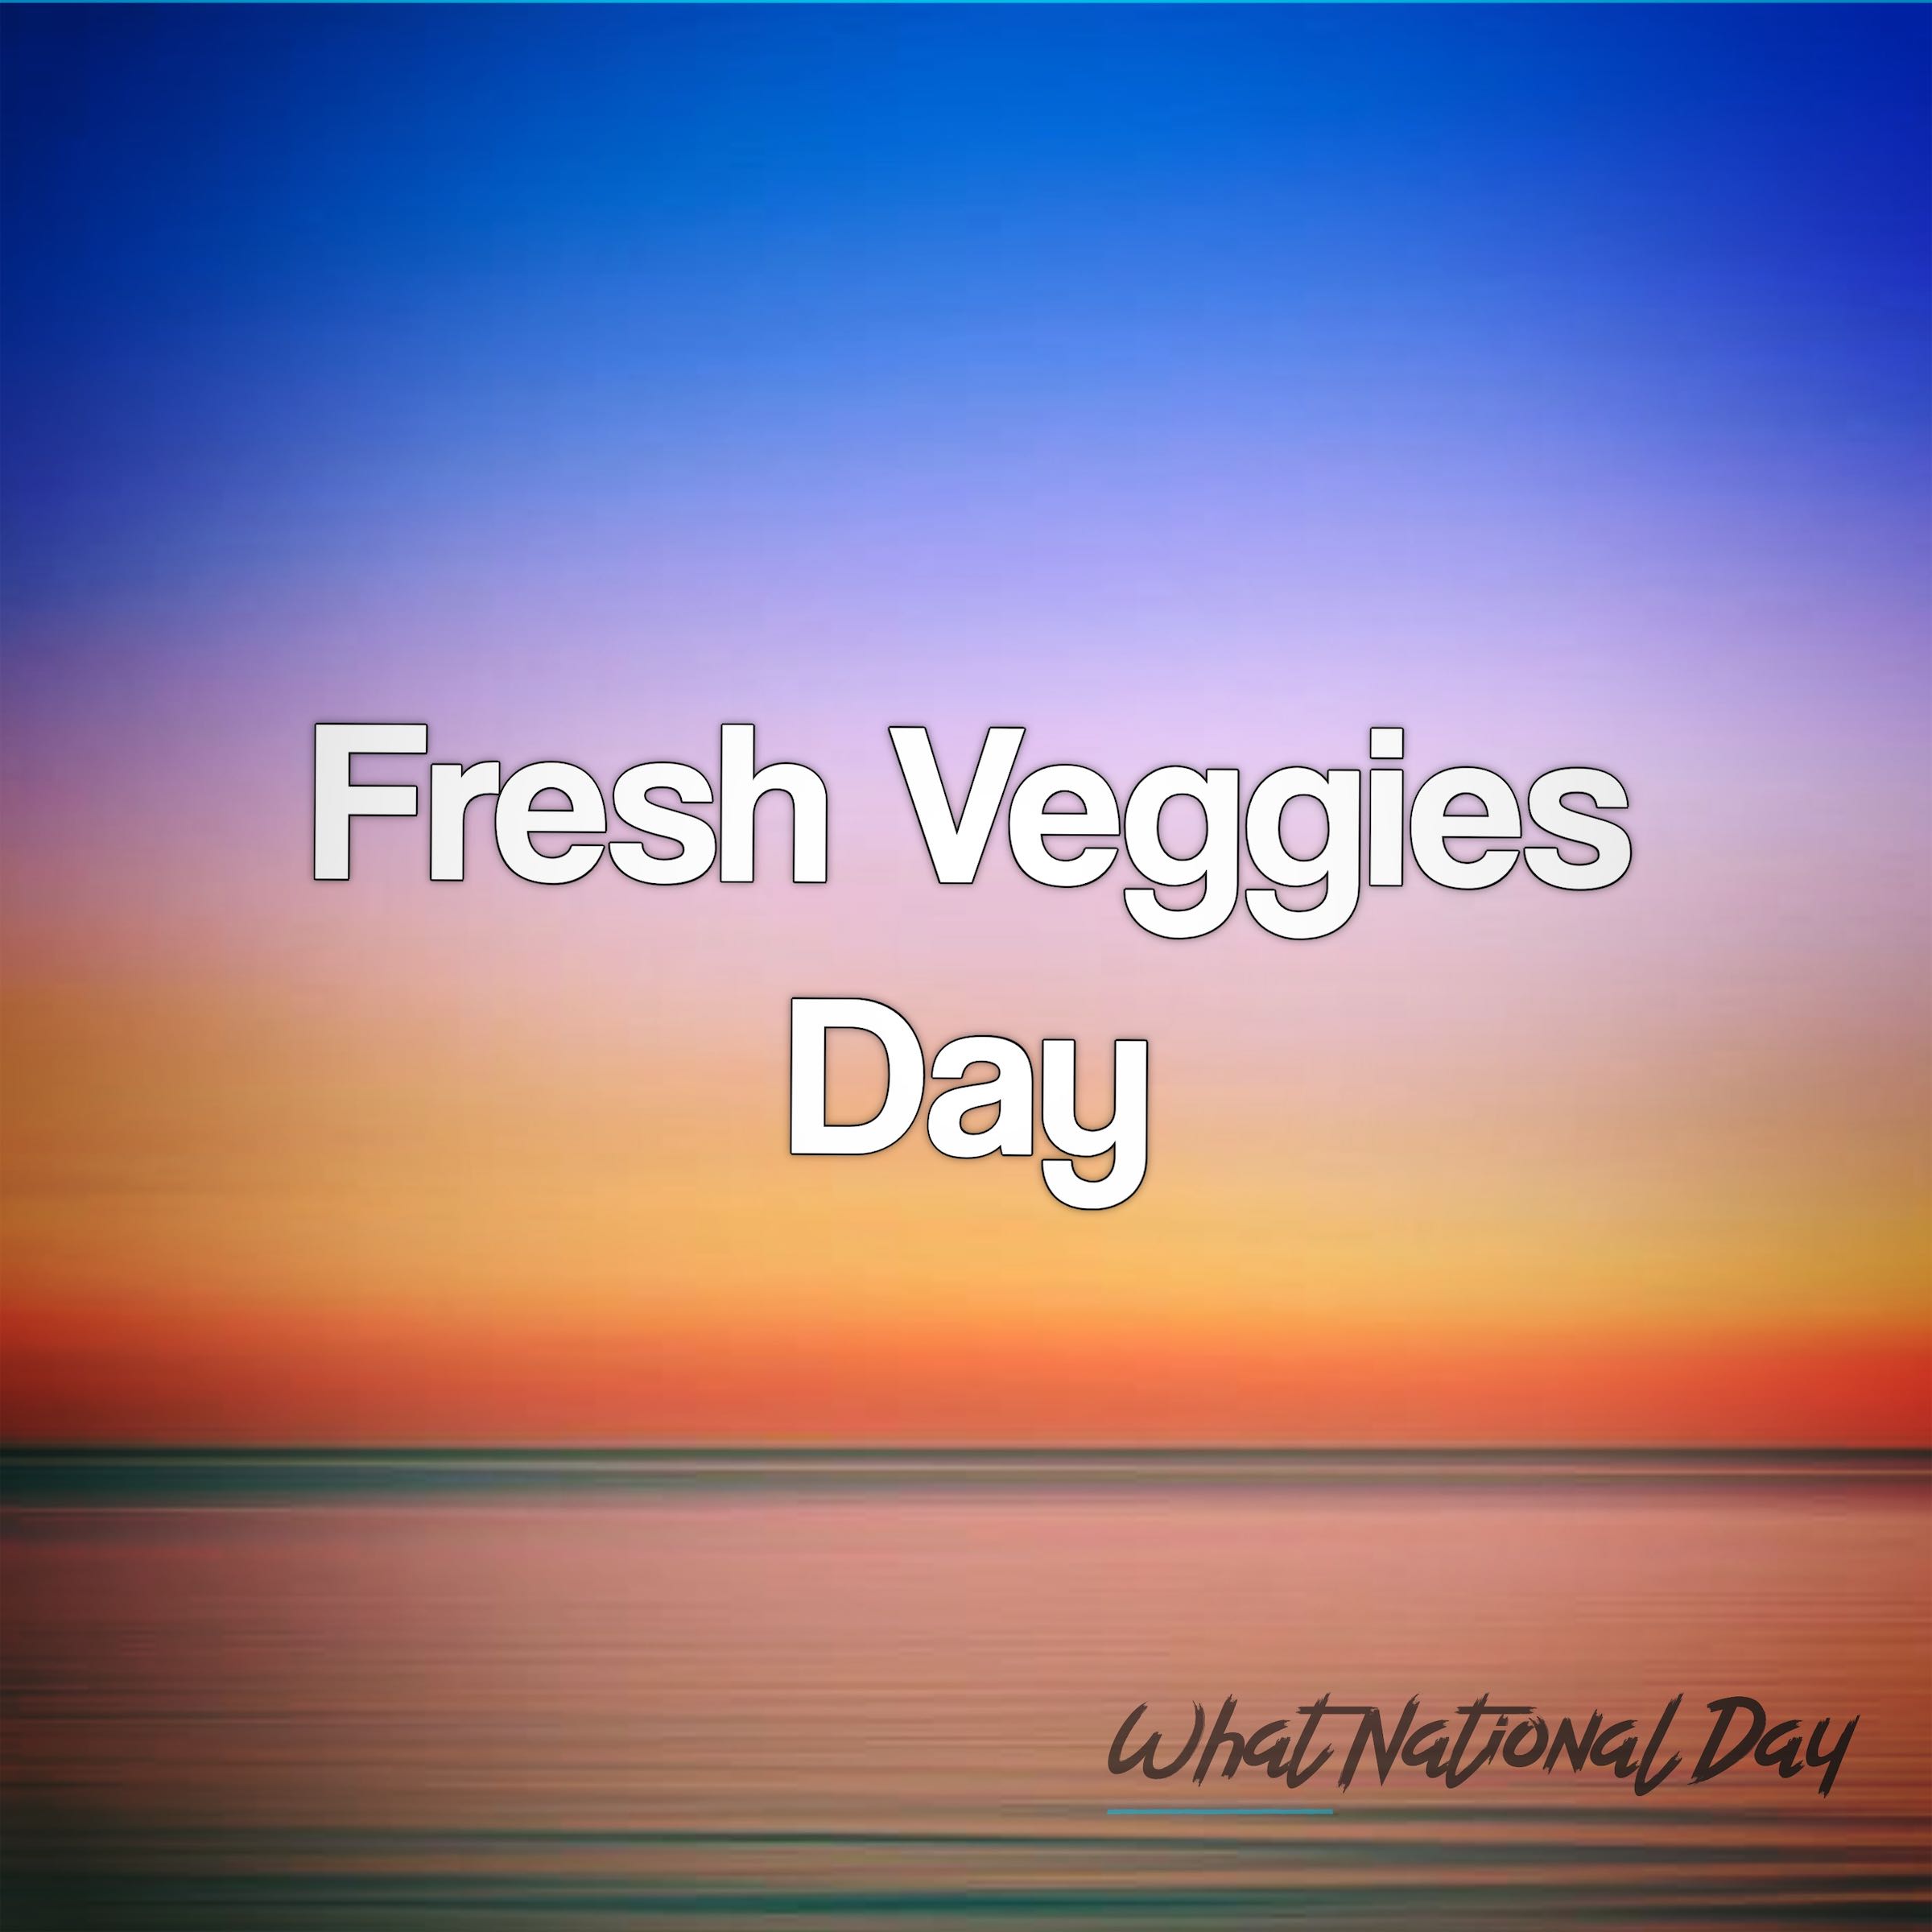 Fresh Veggies Day